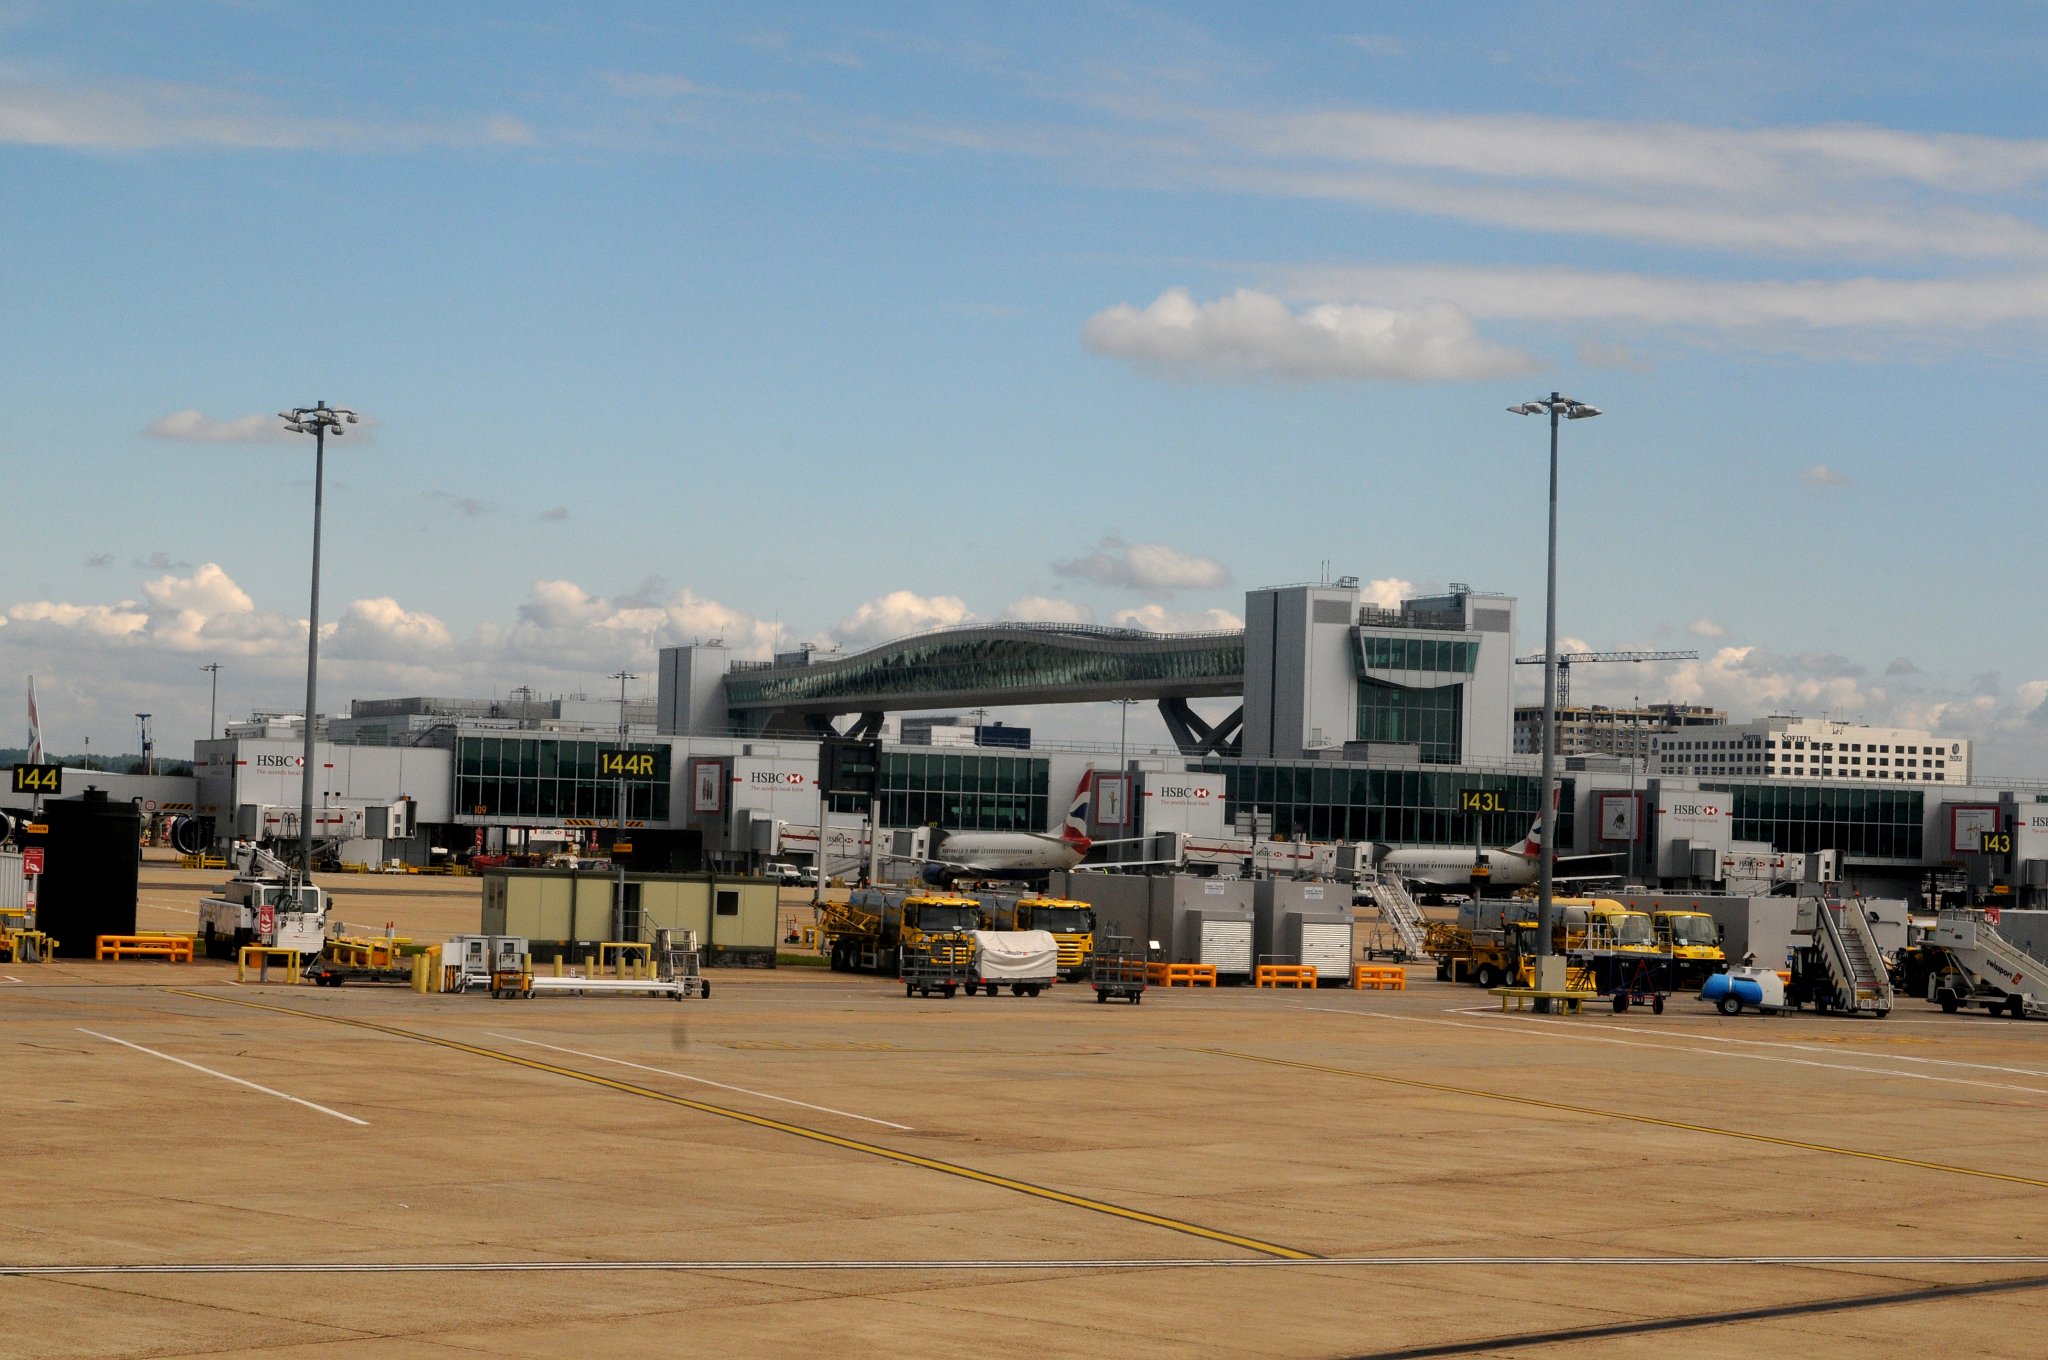 DSC_2735_2.jpg - Letiště Gatwick (London Gatwick Airport) je druhé nejrušnější letiště Velké Británie podle počtu odbavených cestujících za rok. Nachází se v hrabství West Sussex, přibližně 40 km jižně od Londýna a stejně daleko od Brightonu.